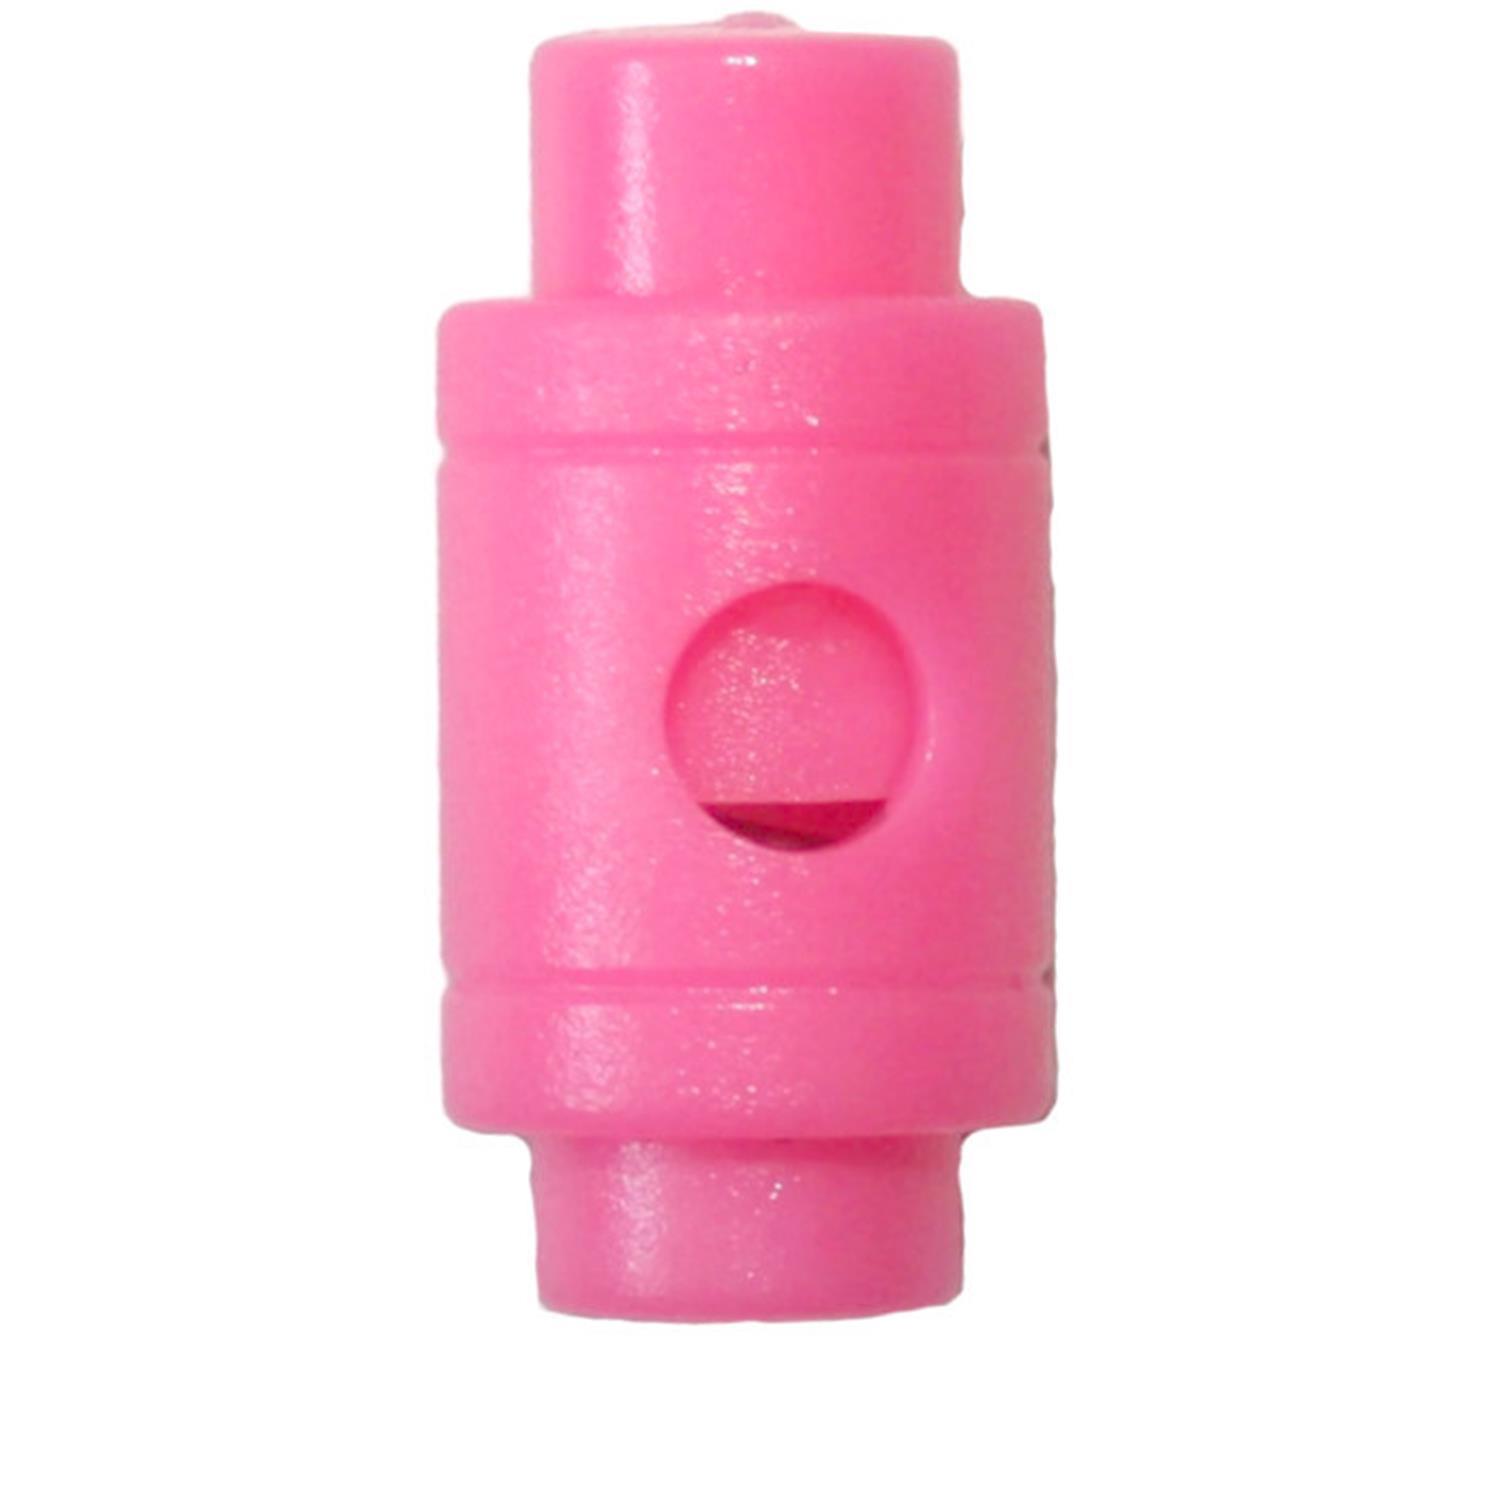 Fluoreszierende Kordelstopper (1-Loch), bis 3,8mm Kordeldurchmesser #26 04 - fluoreszierende pink